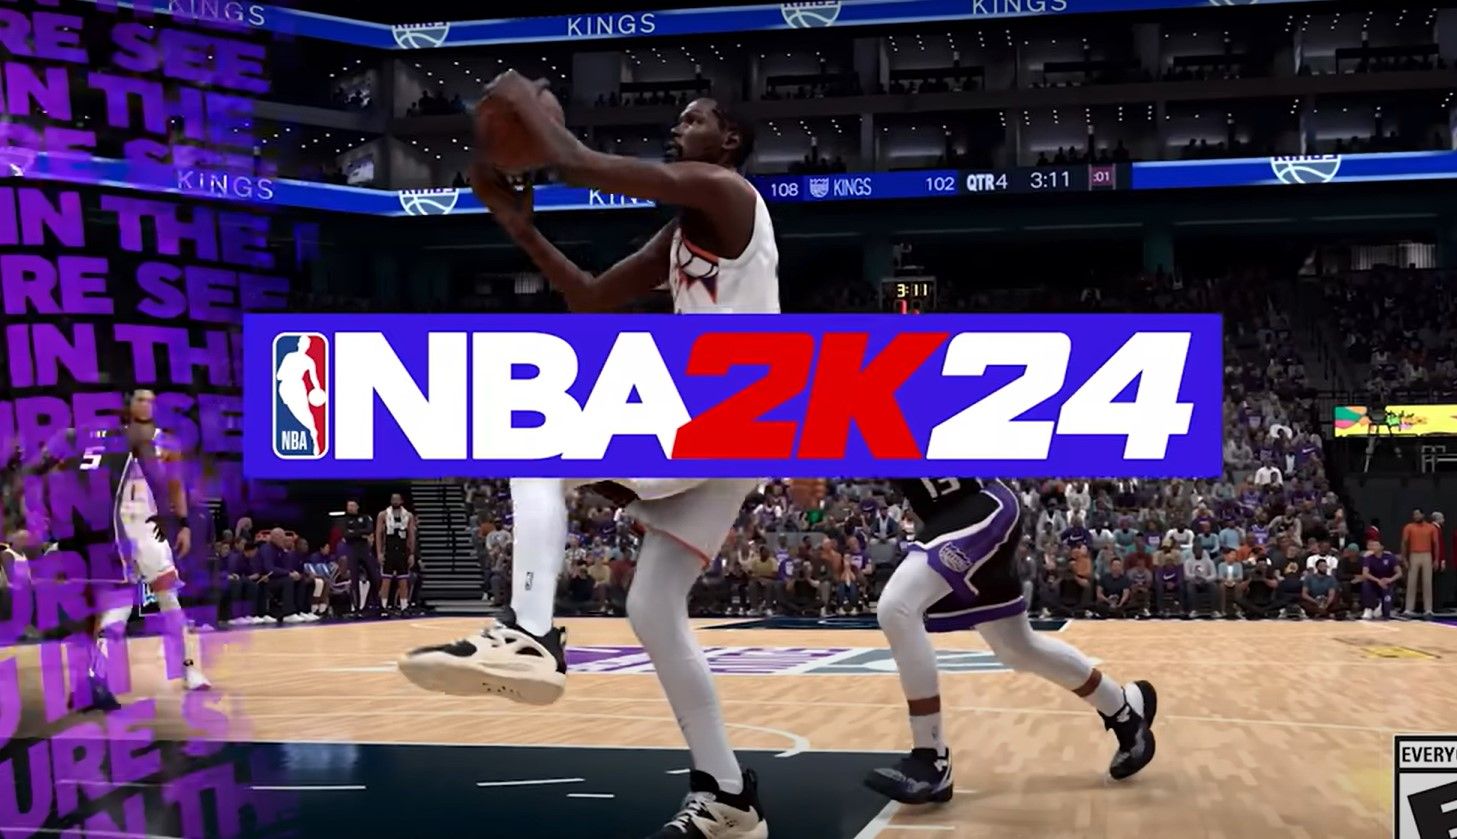 На данный момент "NBA 2K24" занимает второе место среди наименее популярных игр на Steam по отзывам